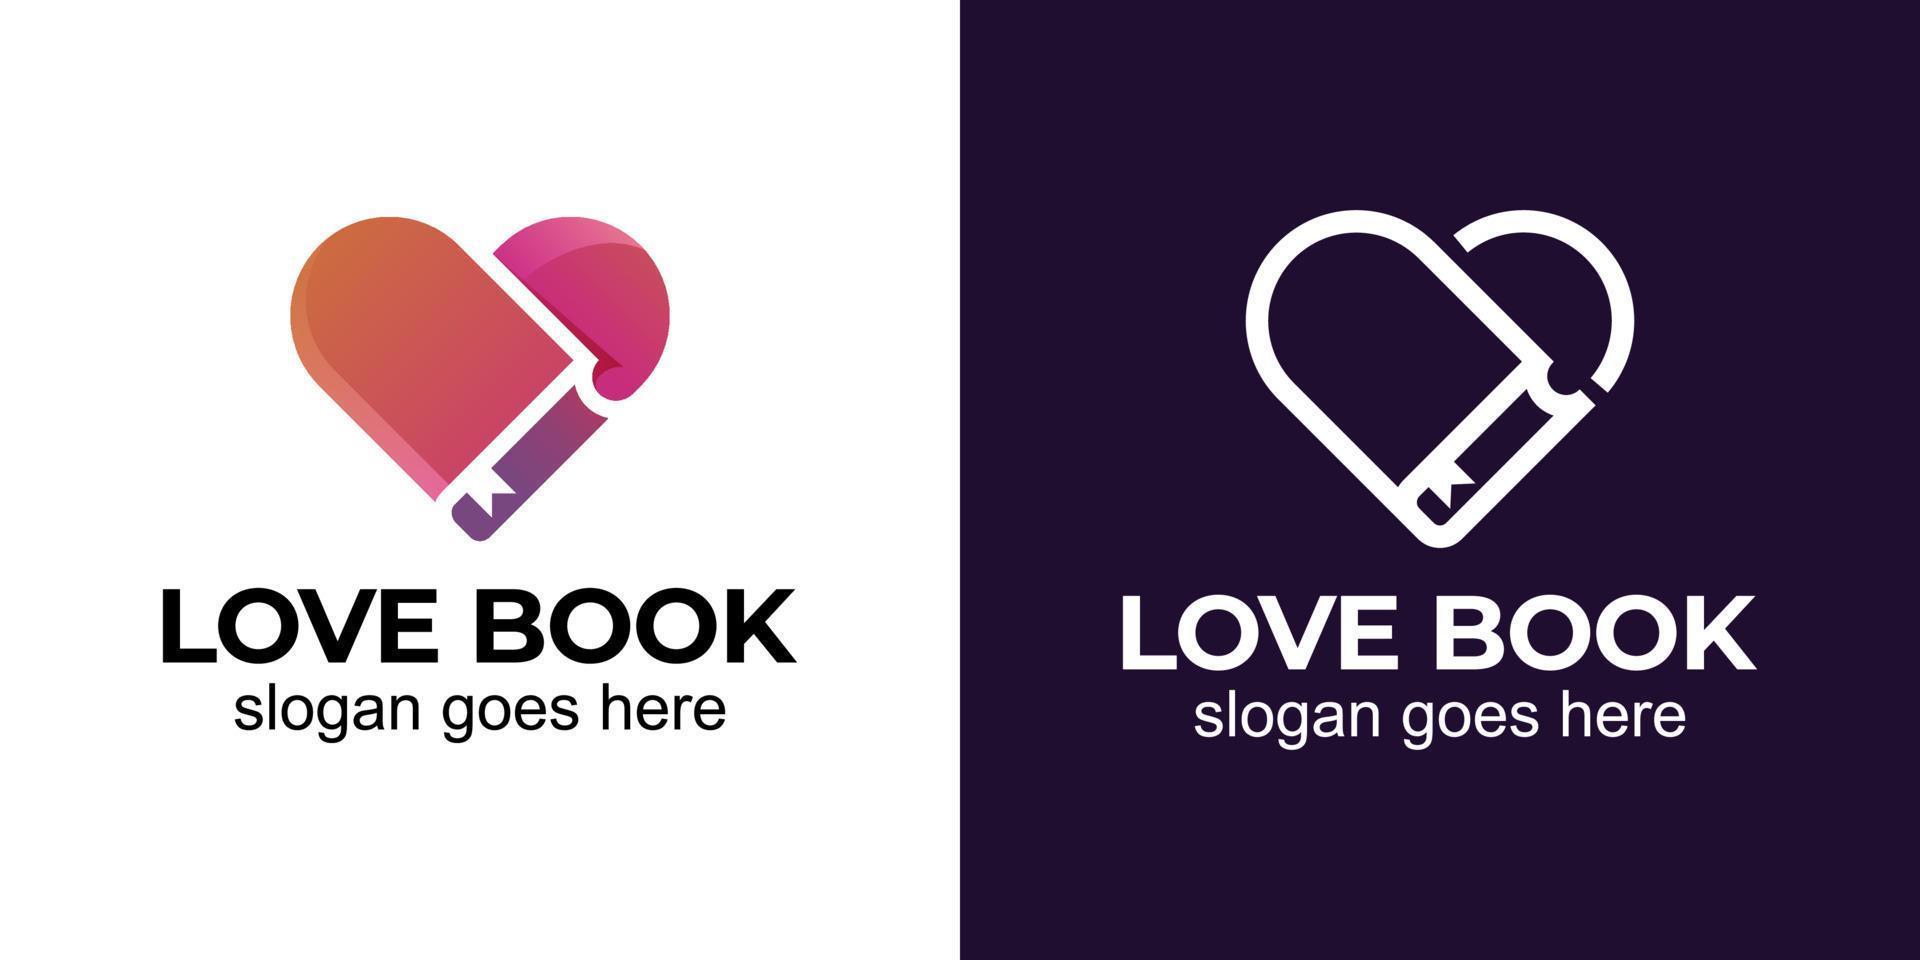 Liebesgeschichtenbuch mit Liebe zur Bibliothek, Buchhandlung, romantischem Roman und Liebeslesebuch-Logo-Design vektor